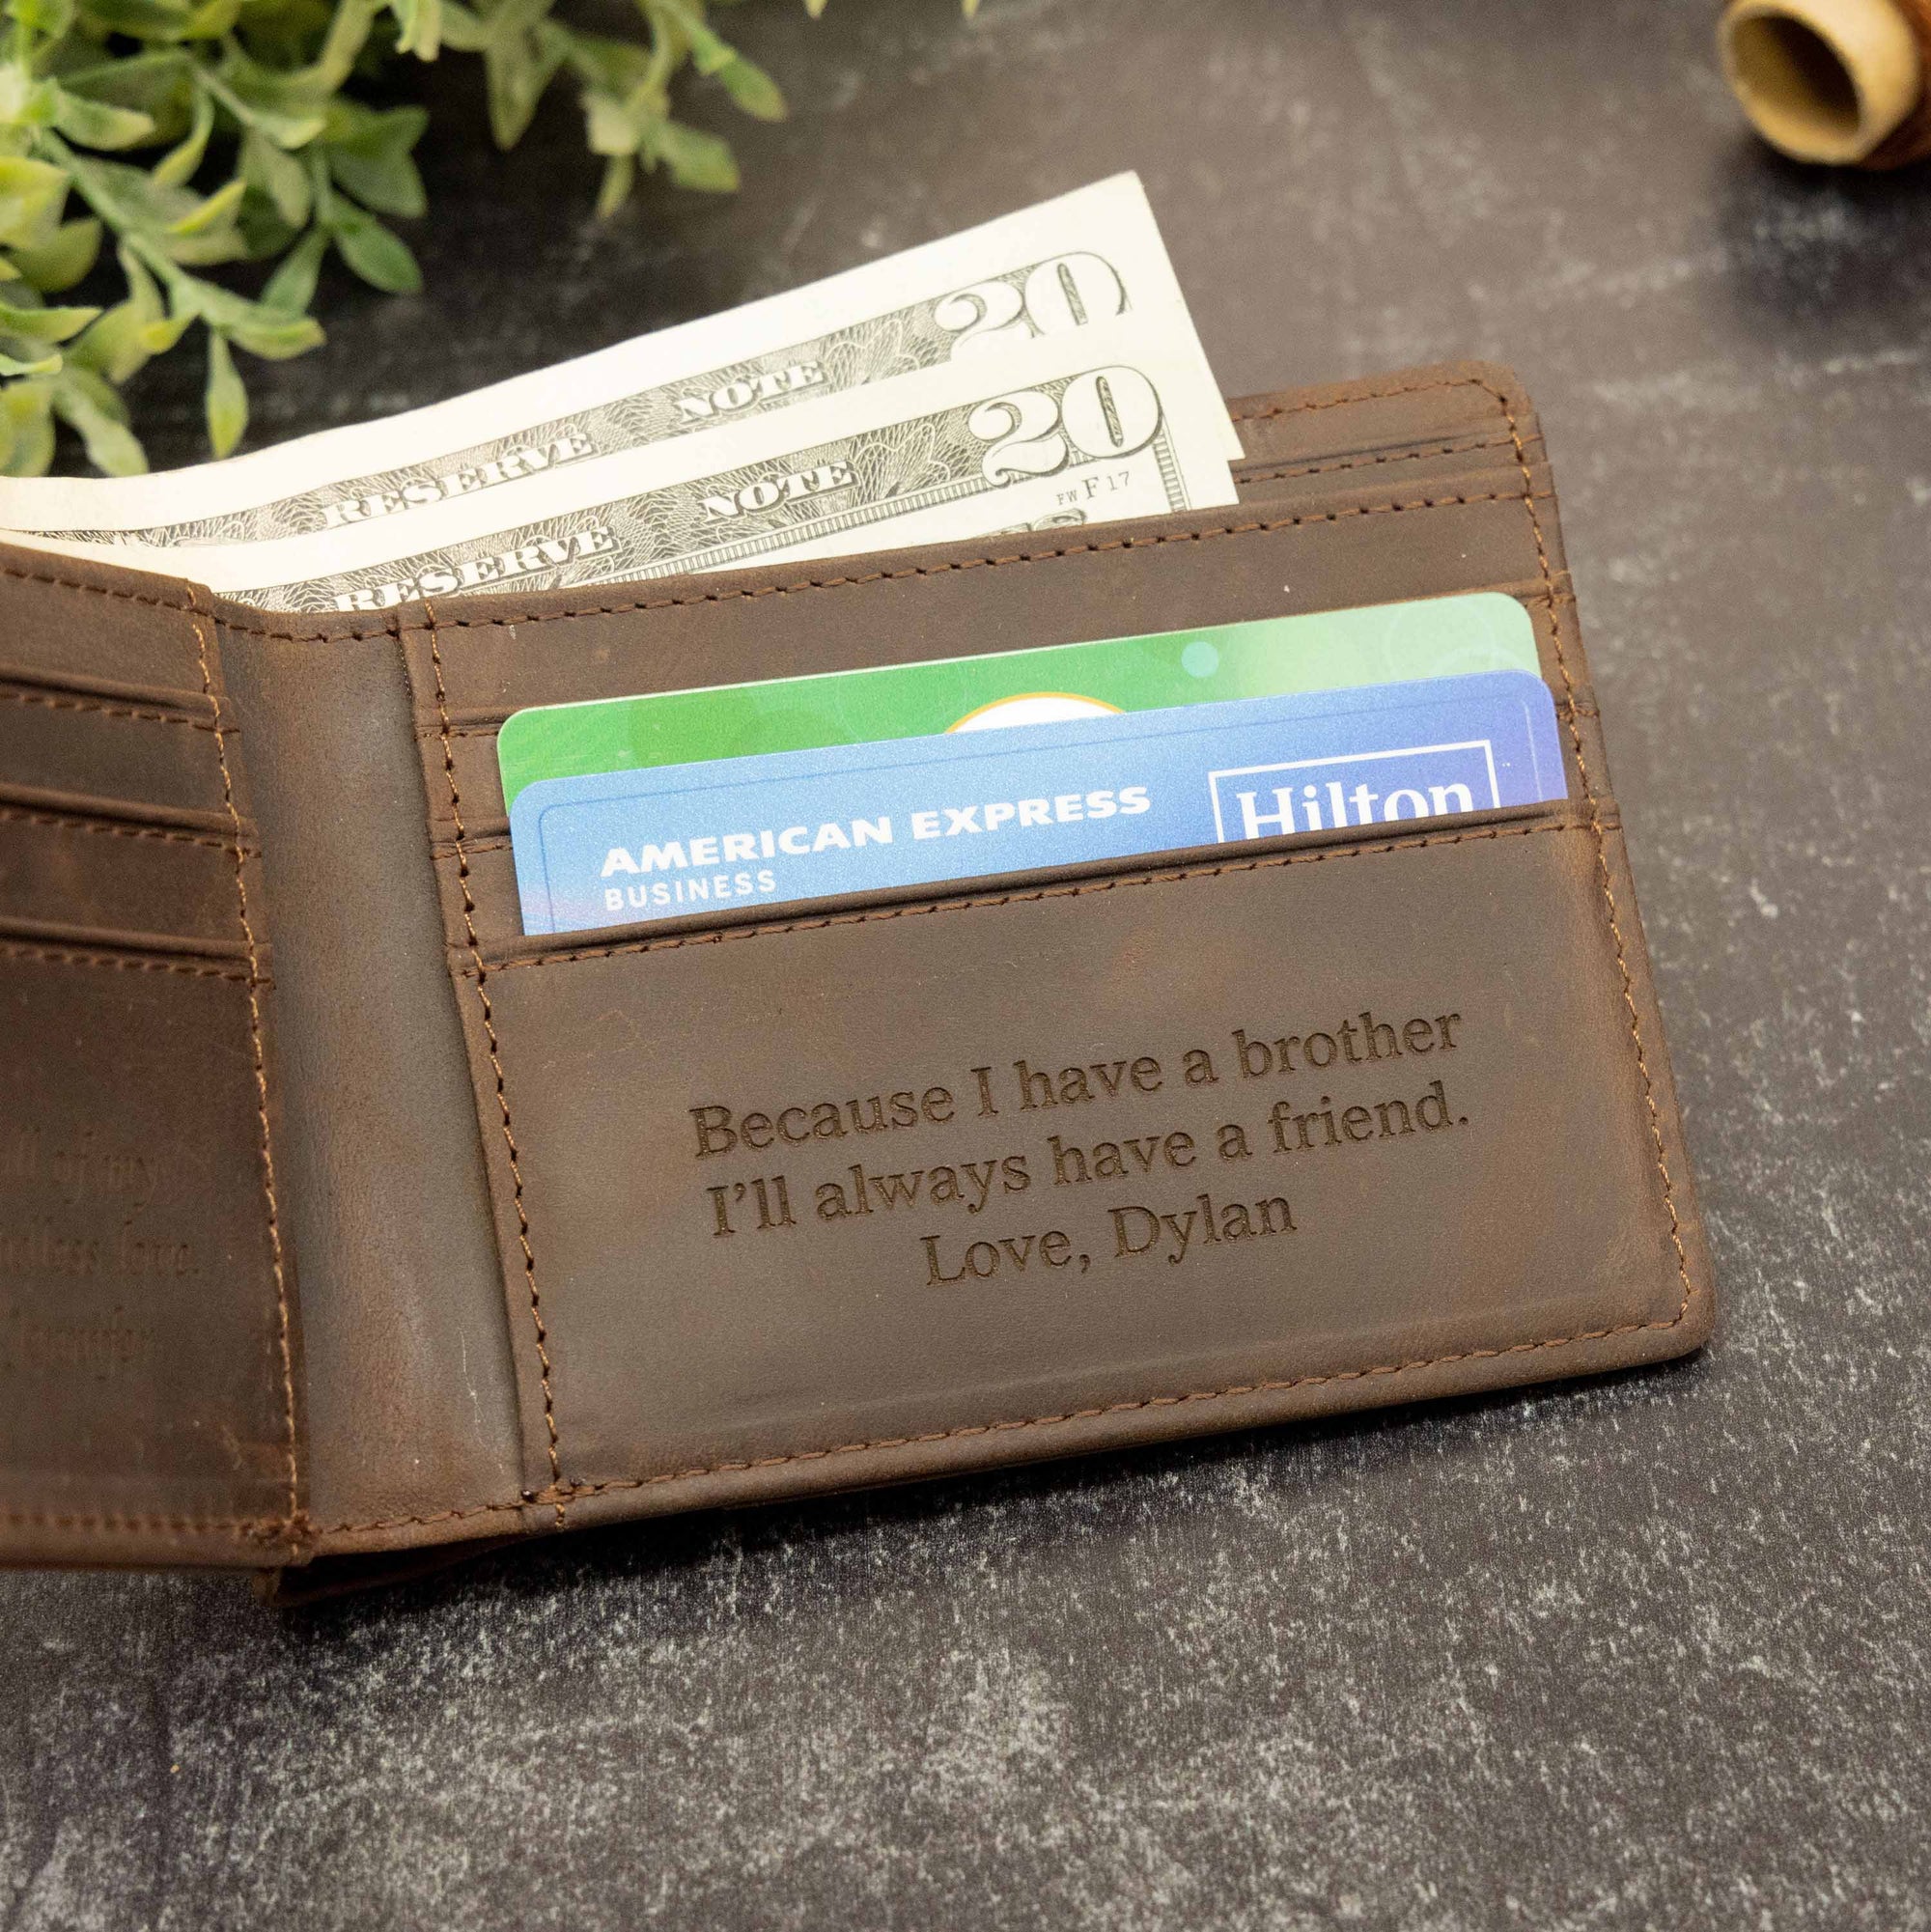 Dark Brown Standard Wallet | The Original - Ox & Birch